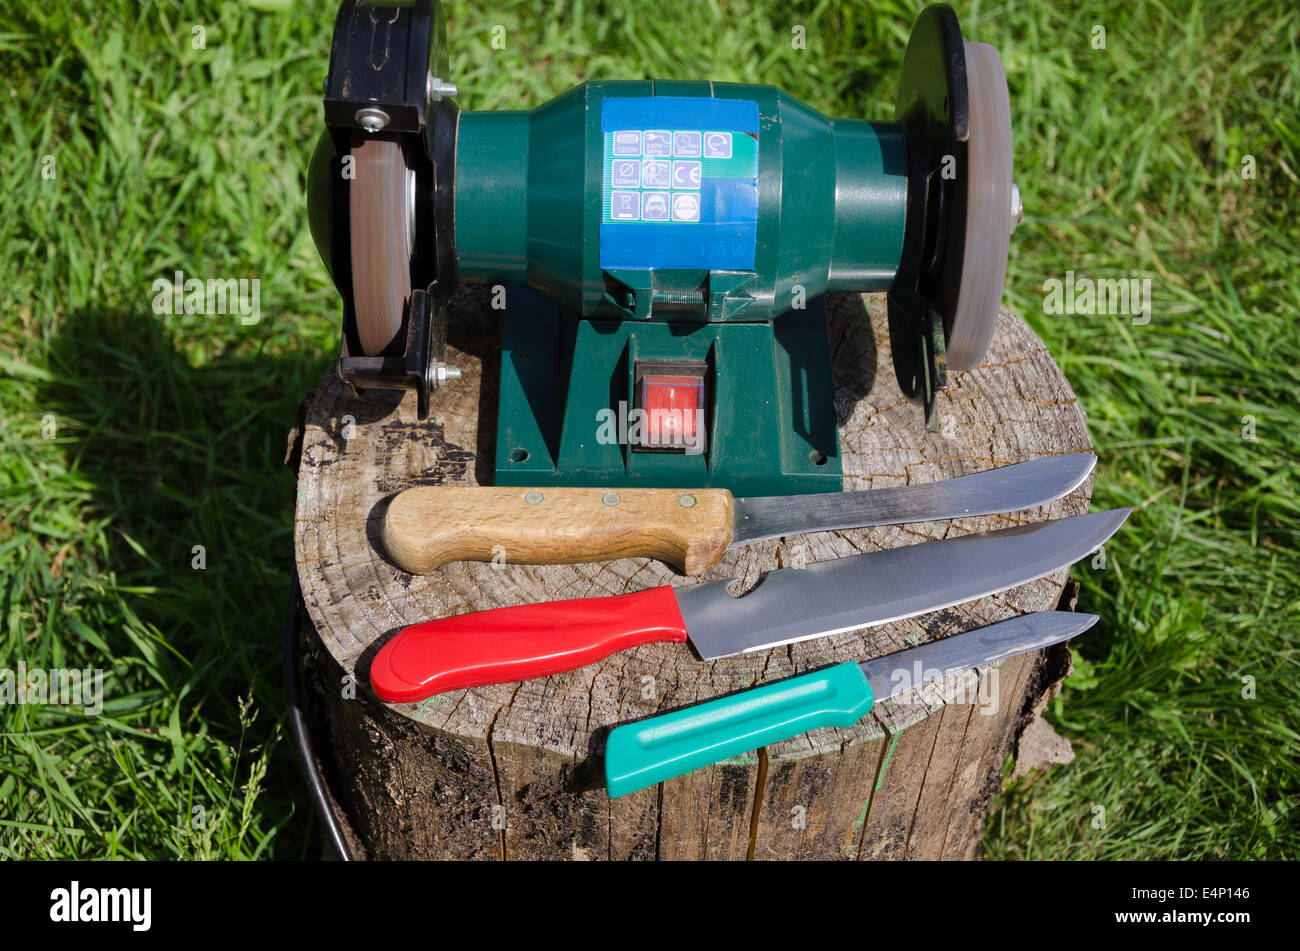 elektrische Messer schärfen Gerät und drei Küchenmesser auf Baumstumpf im freien Stockfoto